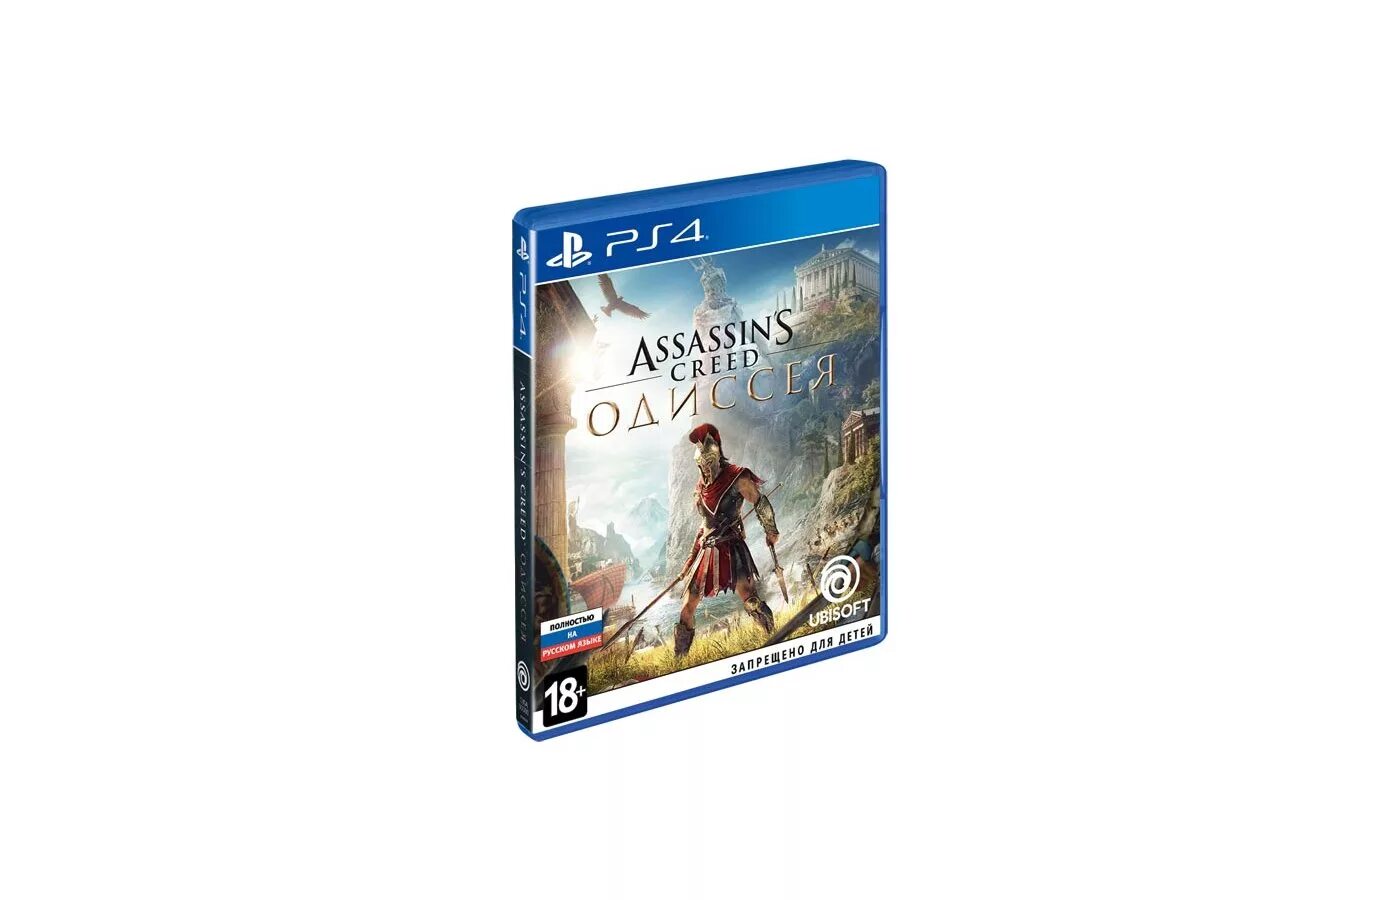 Ассасин Крид Одиссея диск ПС 4. Диск на ПС 4 ассасин Крид Odyssey. Assassin's Creed Одиссея ps4. Ps4 диск Assassins Creed.